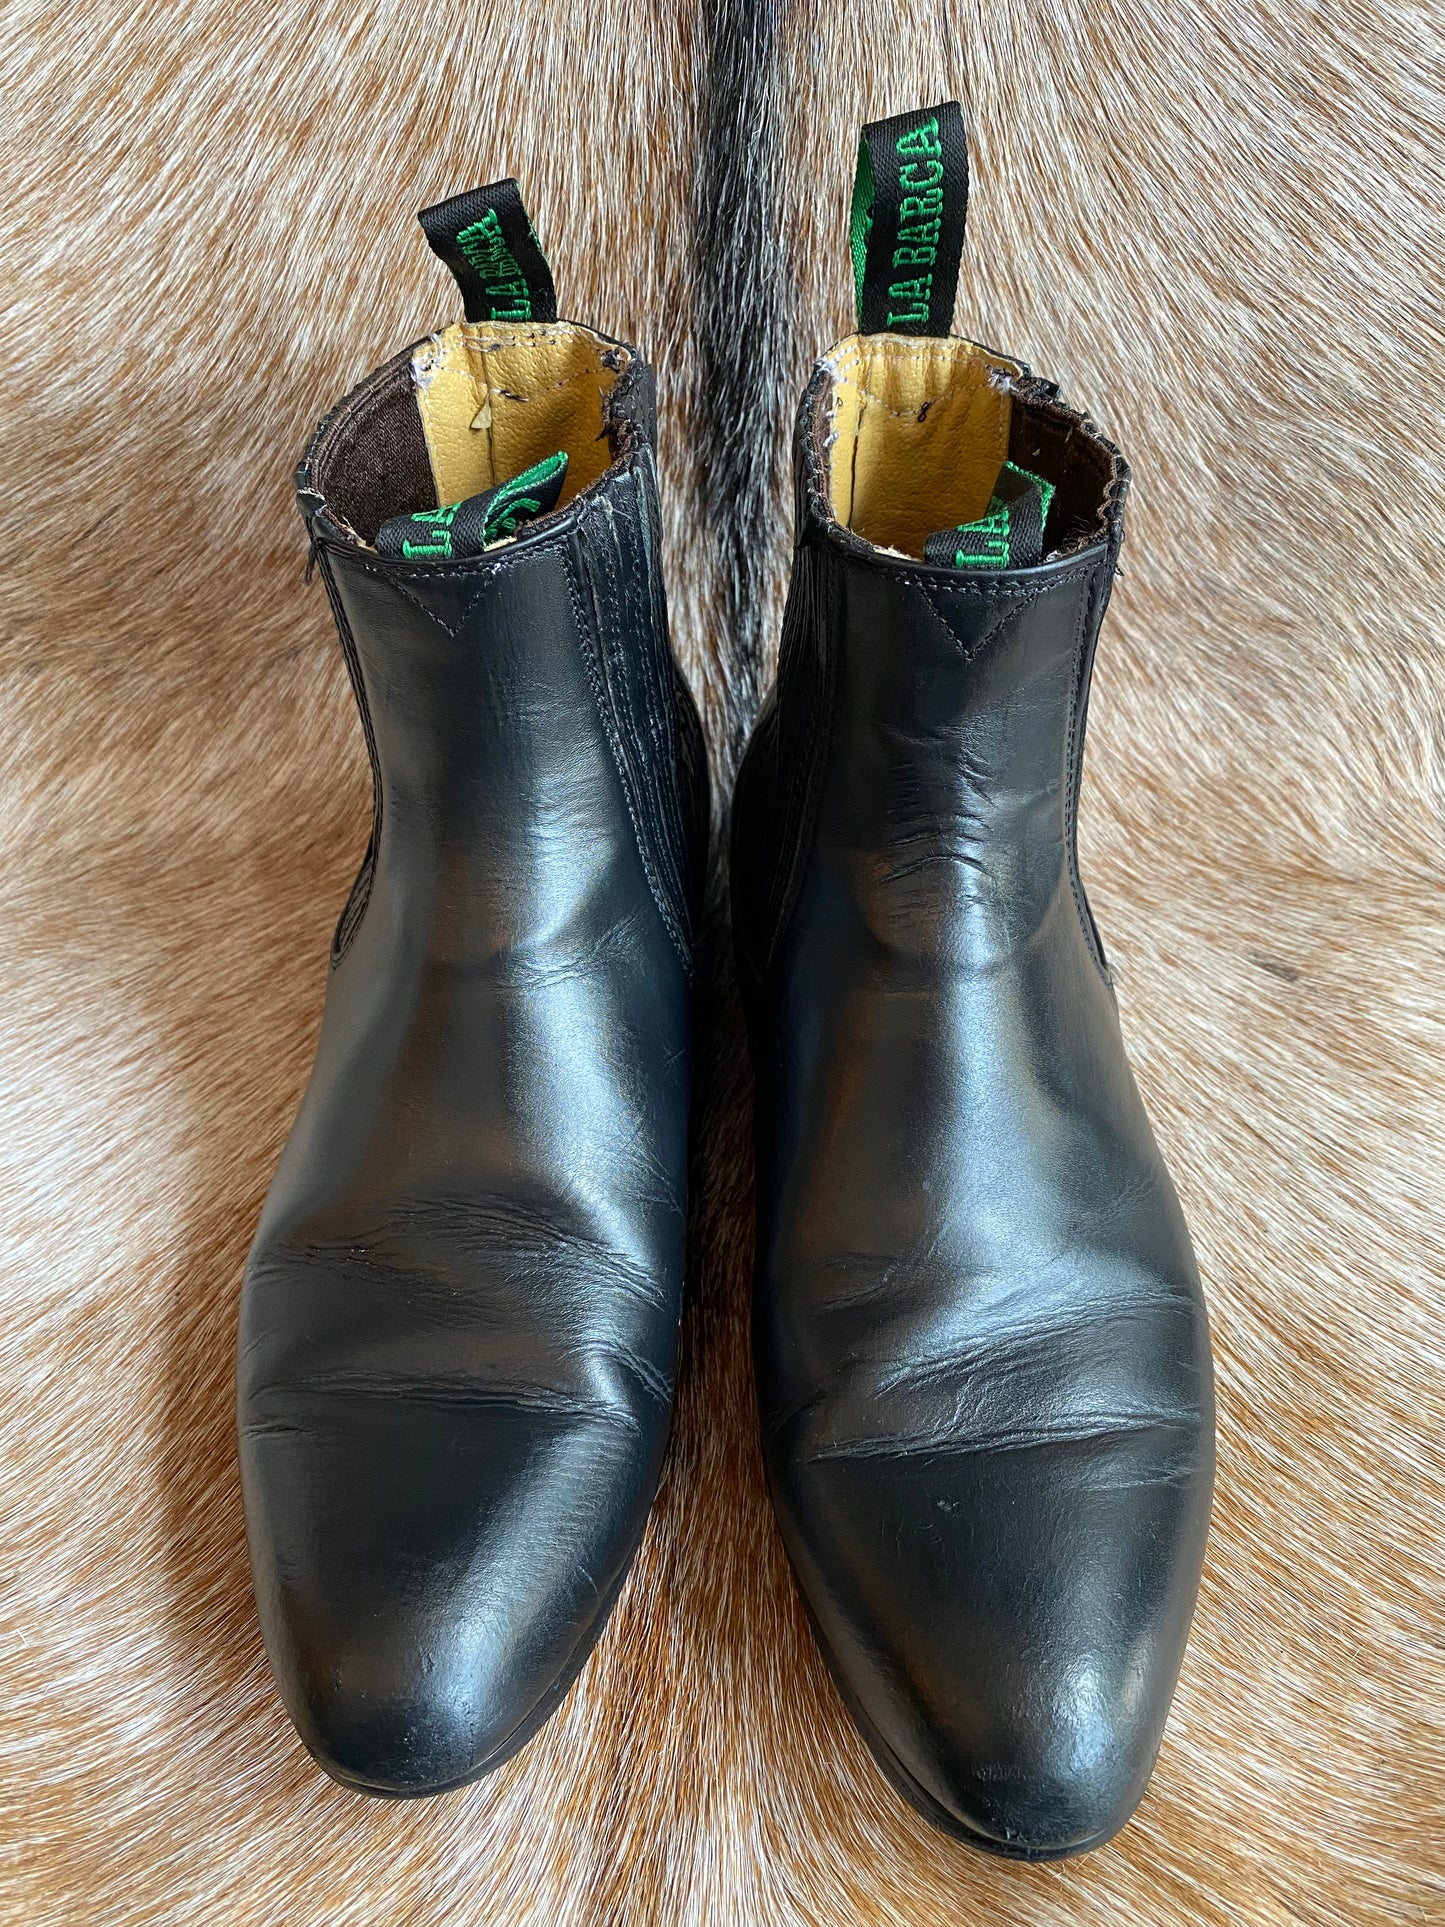 Vintage La Barca Leather Ankle Boots